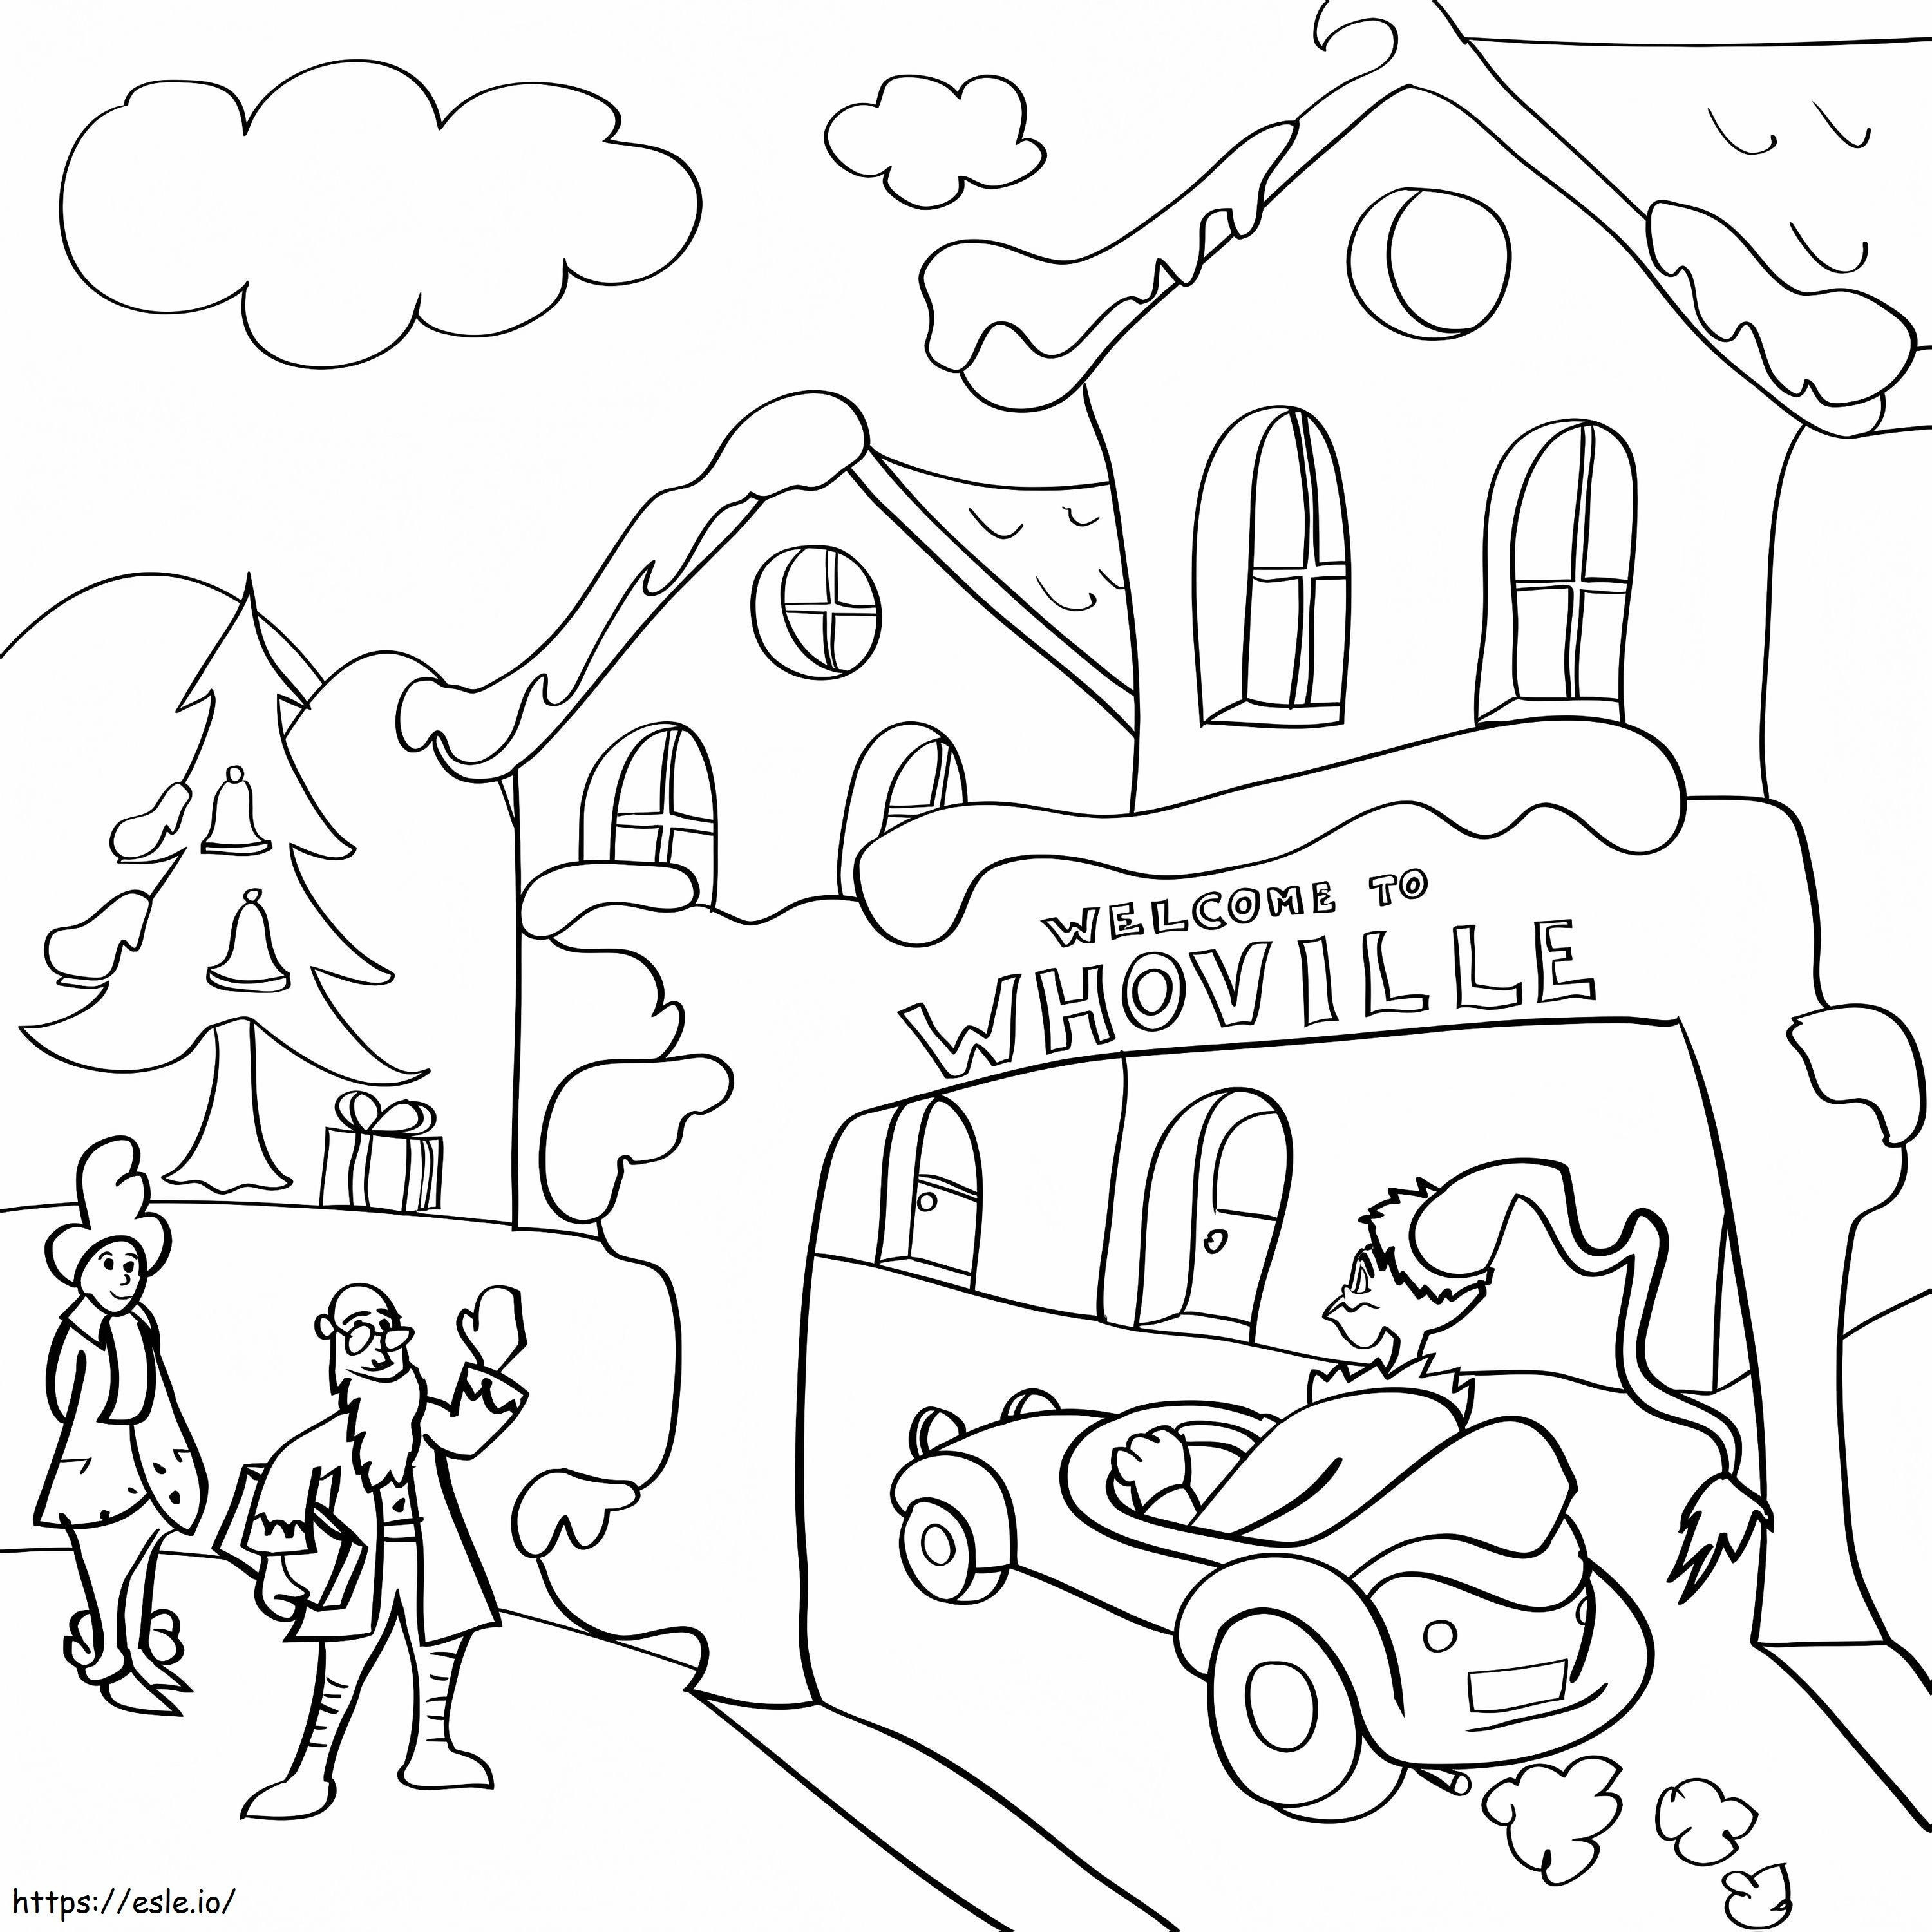 Coloriage Bienvenue à Whoville à imprimer dessin